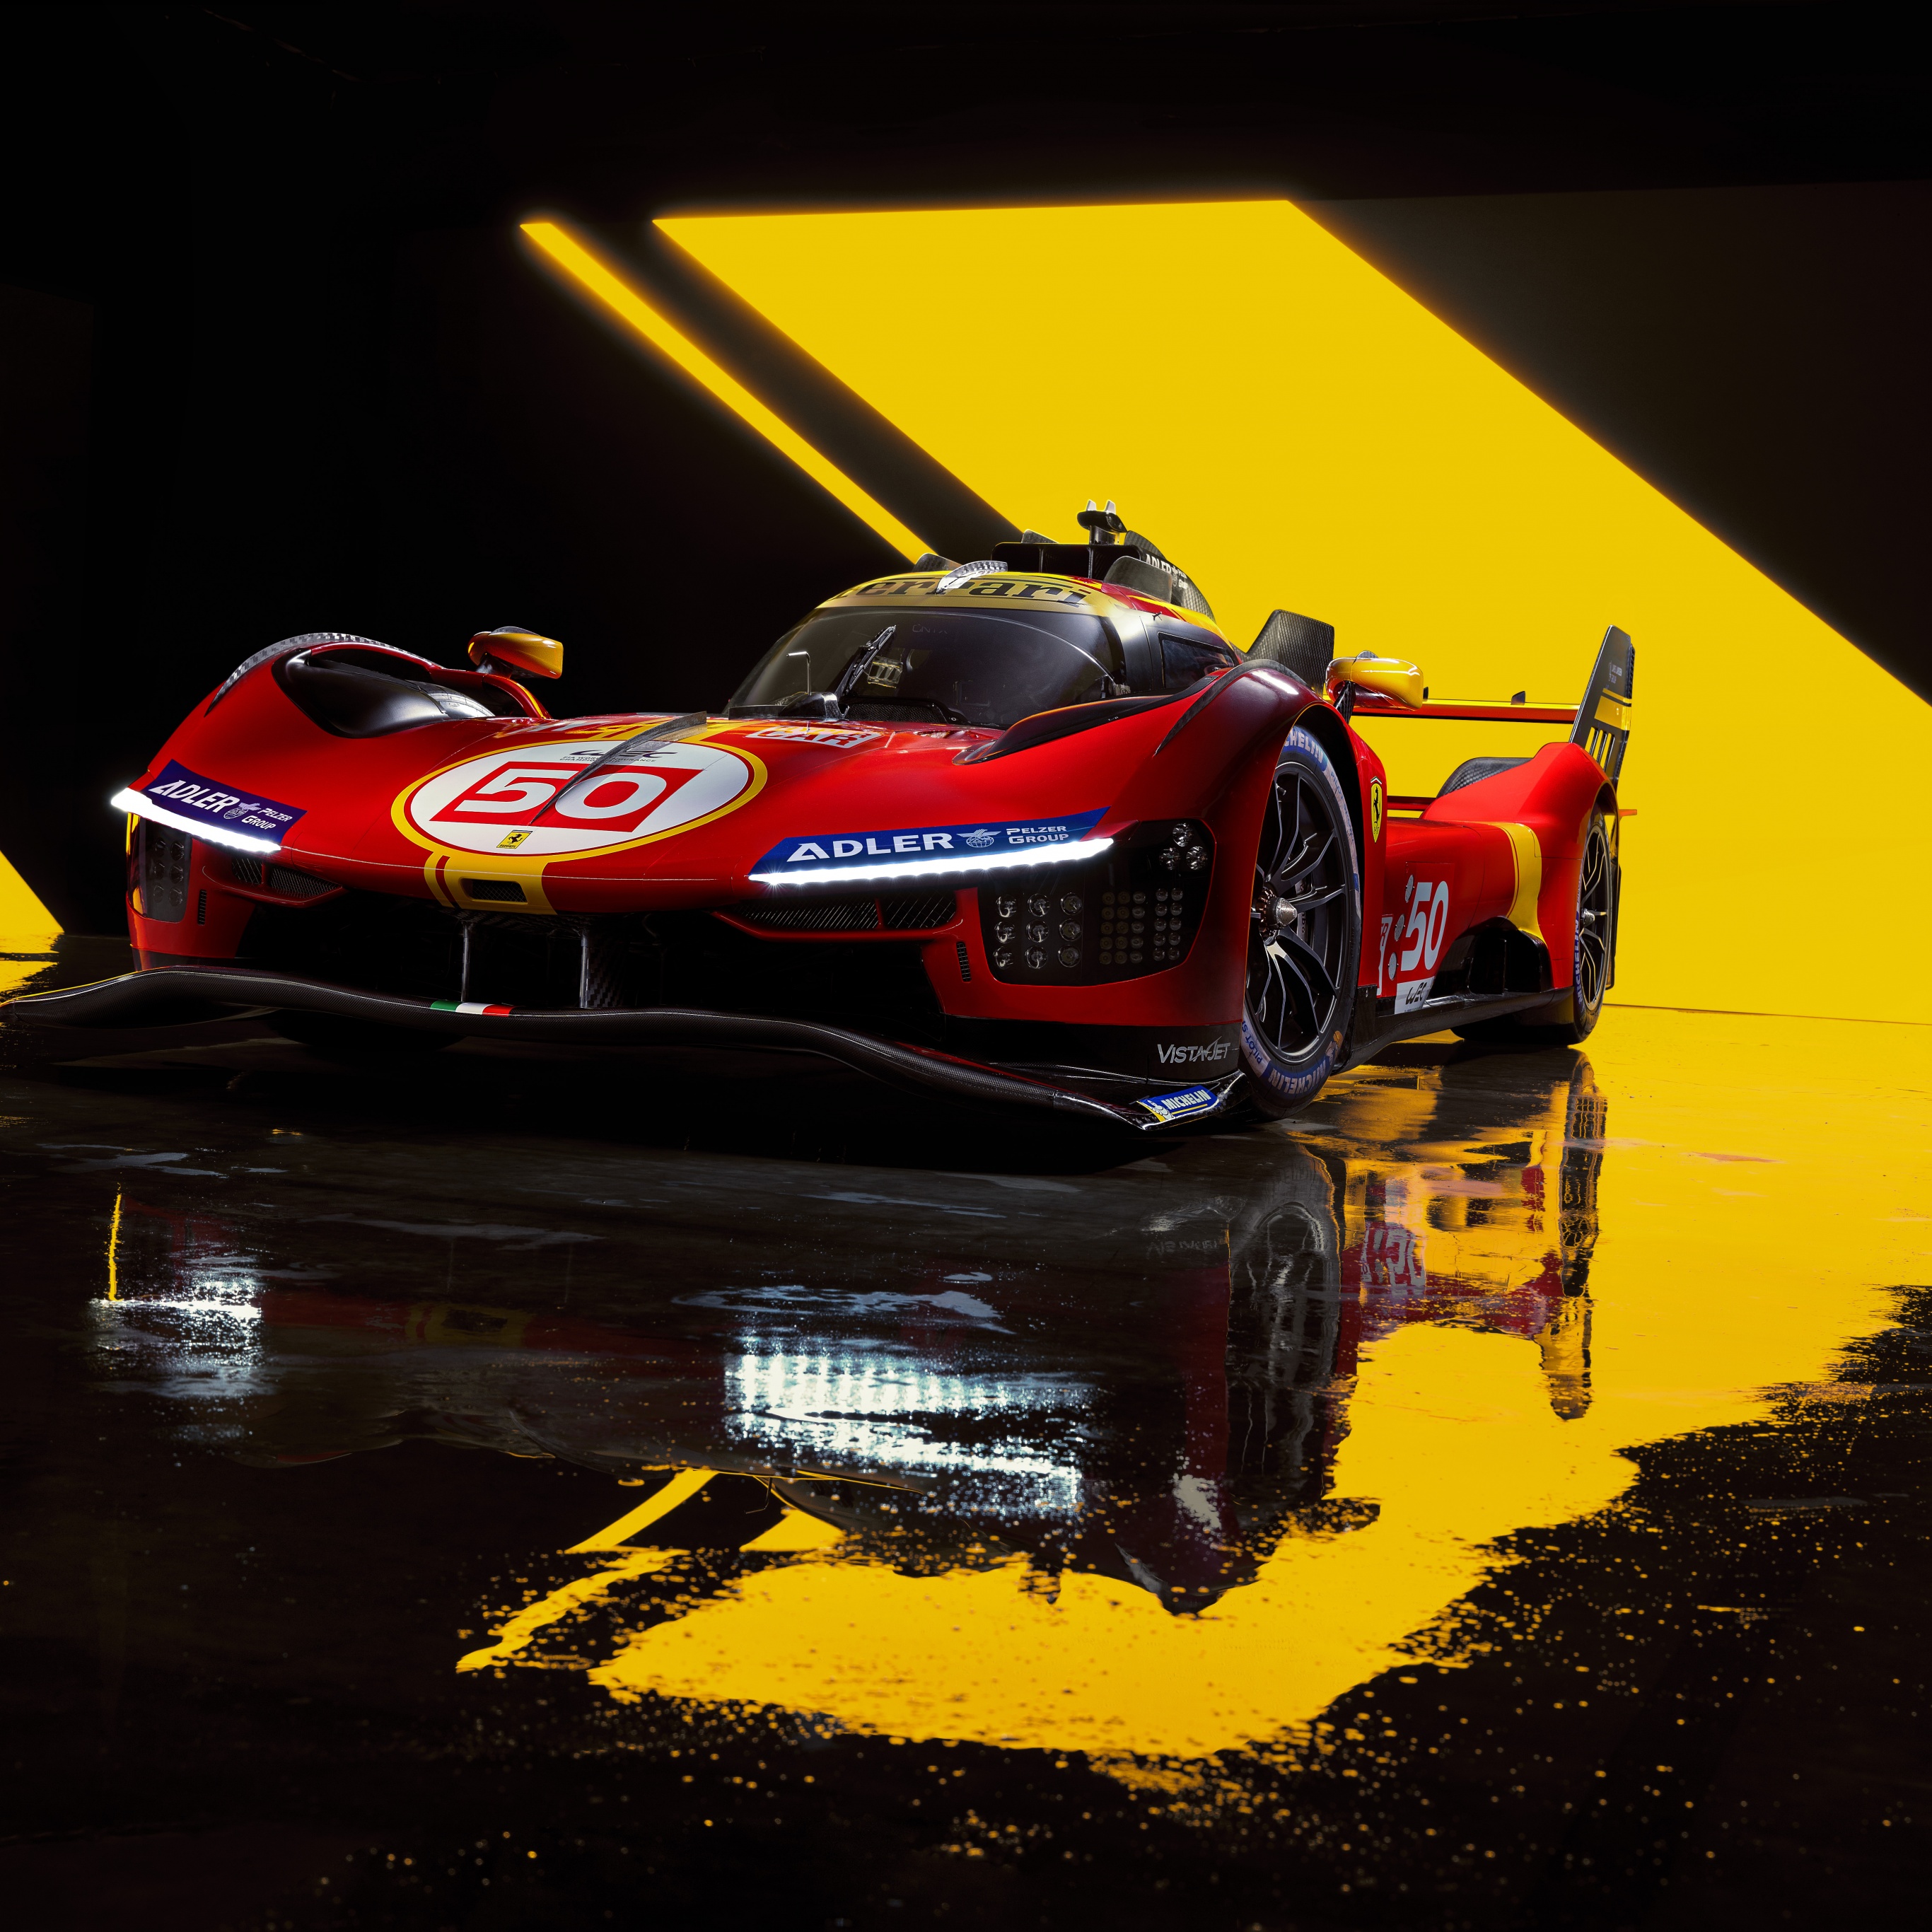 Với hình ảnh xe ô tô Ferrari 499P 4K và hashtag #8994, đây chắc chắn là một hình nền sẽ khiến bạn ngất ngây vì đẹp. Với thiết kế đầy sức mạnh và hiện đại, hình ảnh này sẽ mang đến cho bạn những trải nghiệm tuyệt vời và một không gian làm việc đầy sự sáng tạo. Hãy cùng tải về và trải nghiệm nhé!